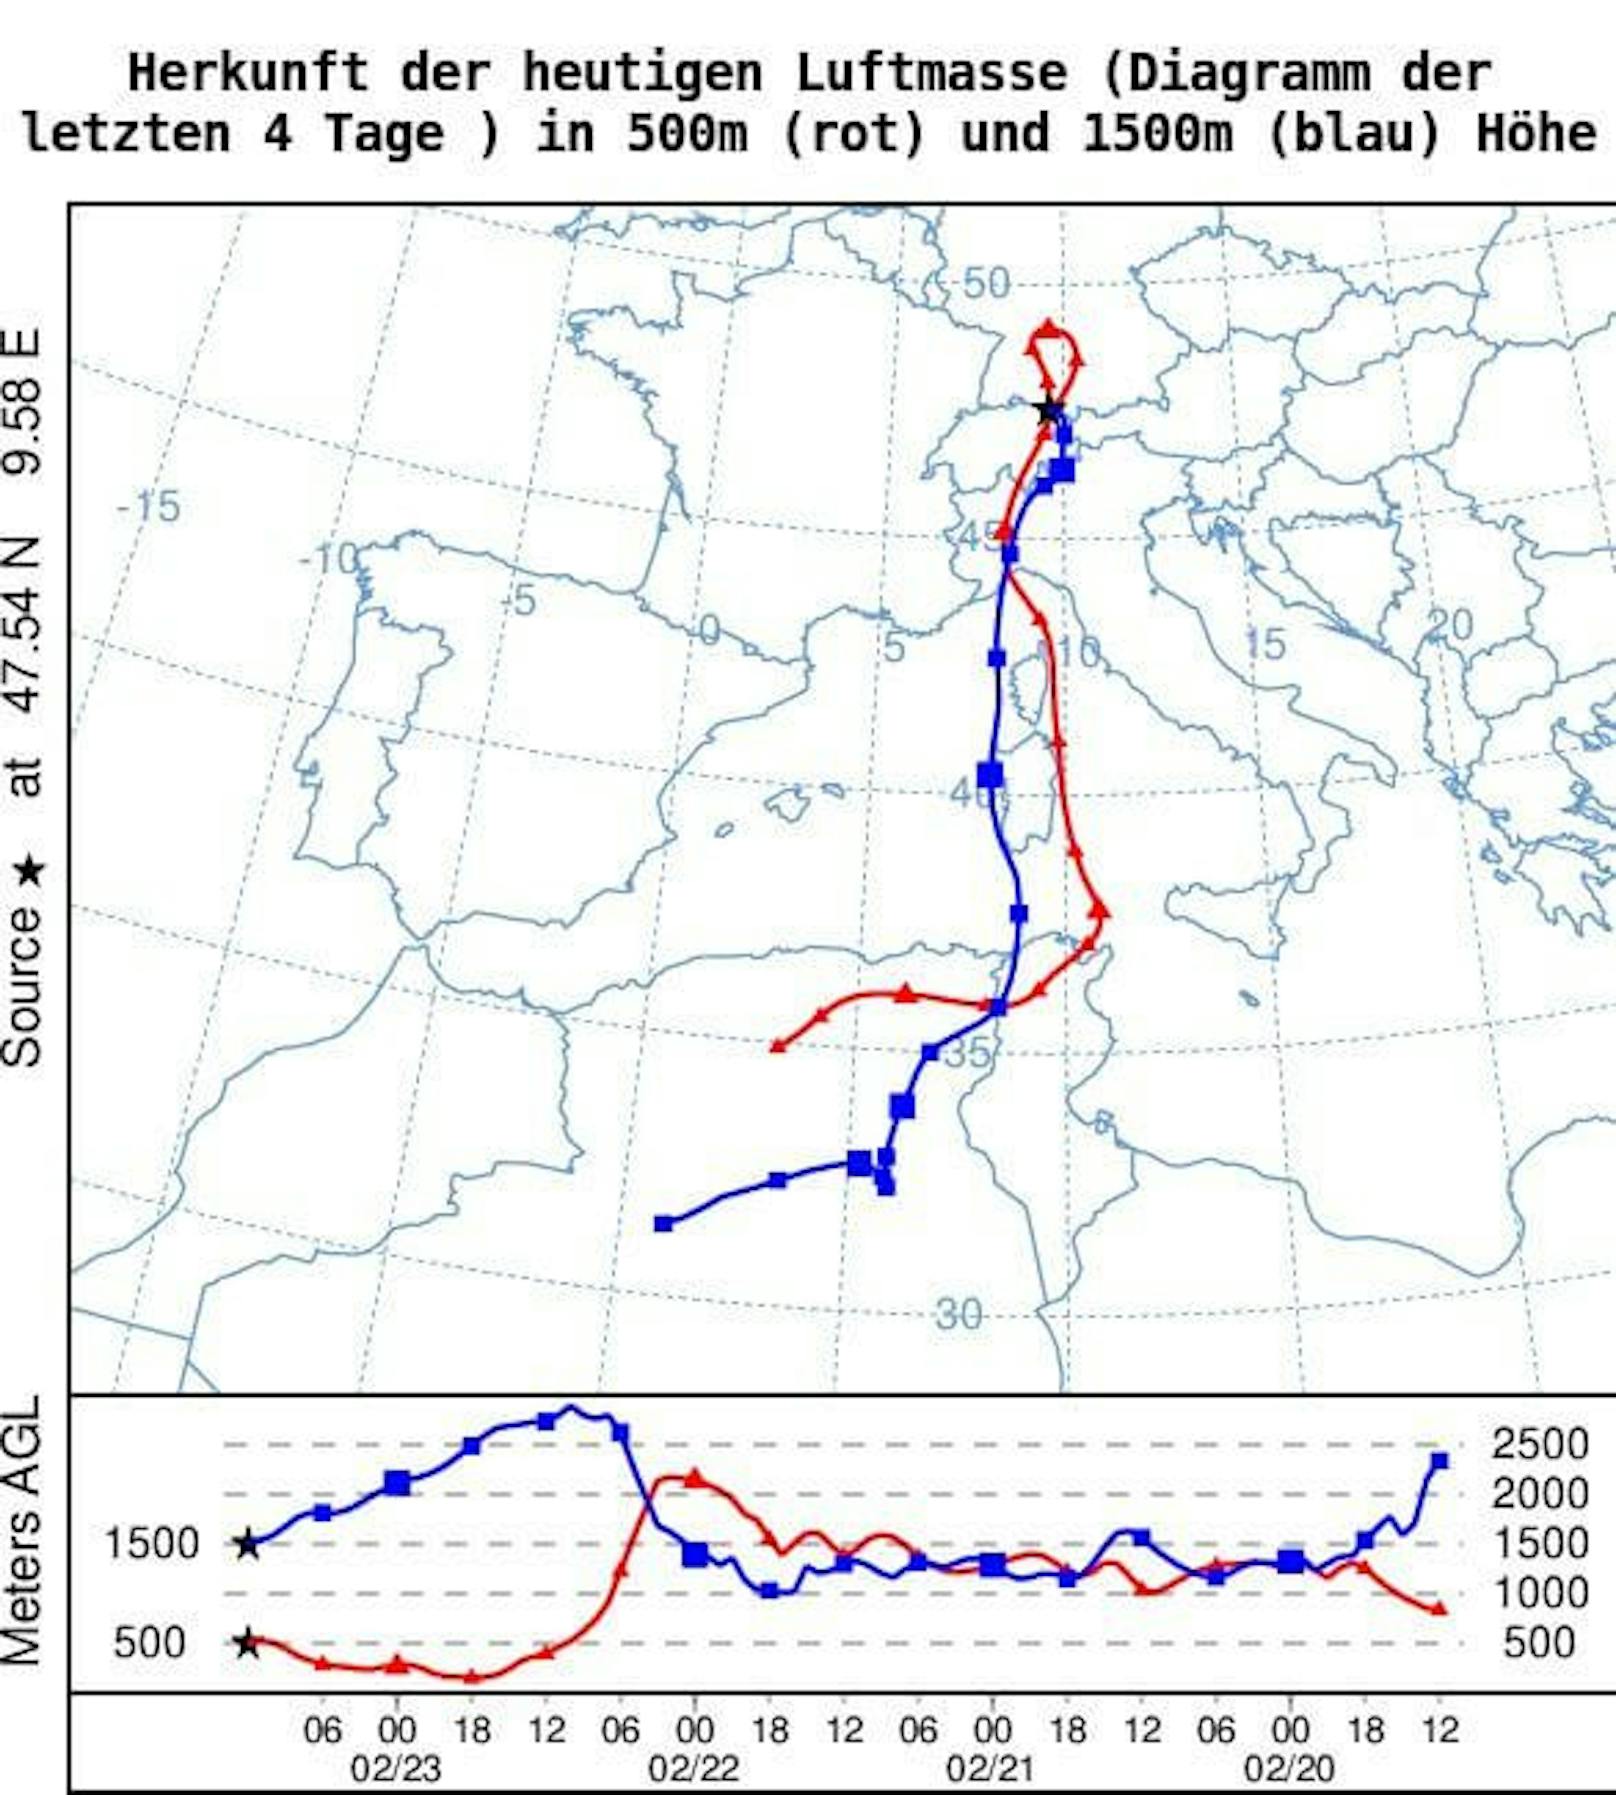 Trajektorie der Luftmasse in 500 (rot) und 1500 (blau) Meter Höhe in den letzten 4 Tagen bis heute – NOAA ARL / HySPLIT Modell